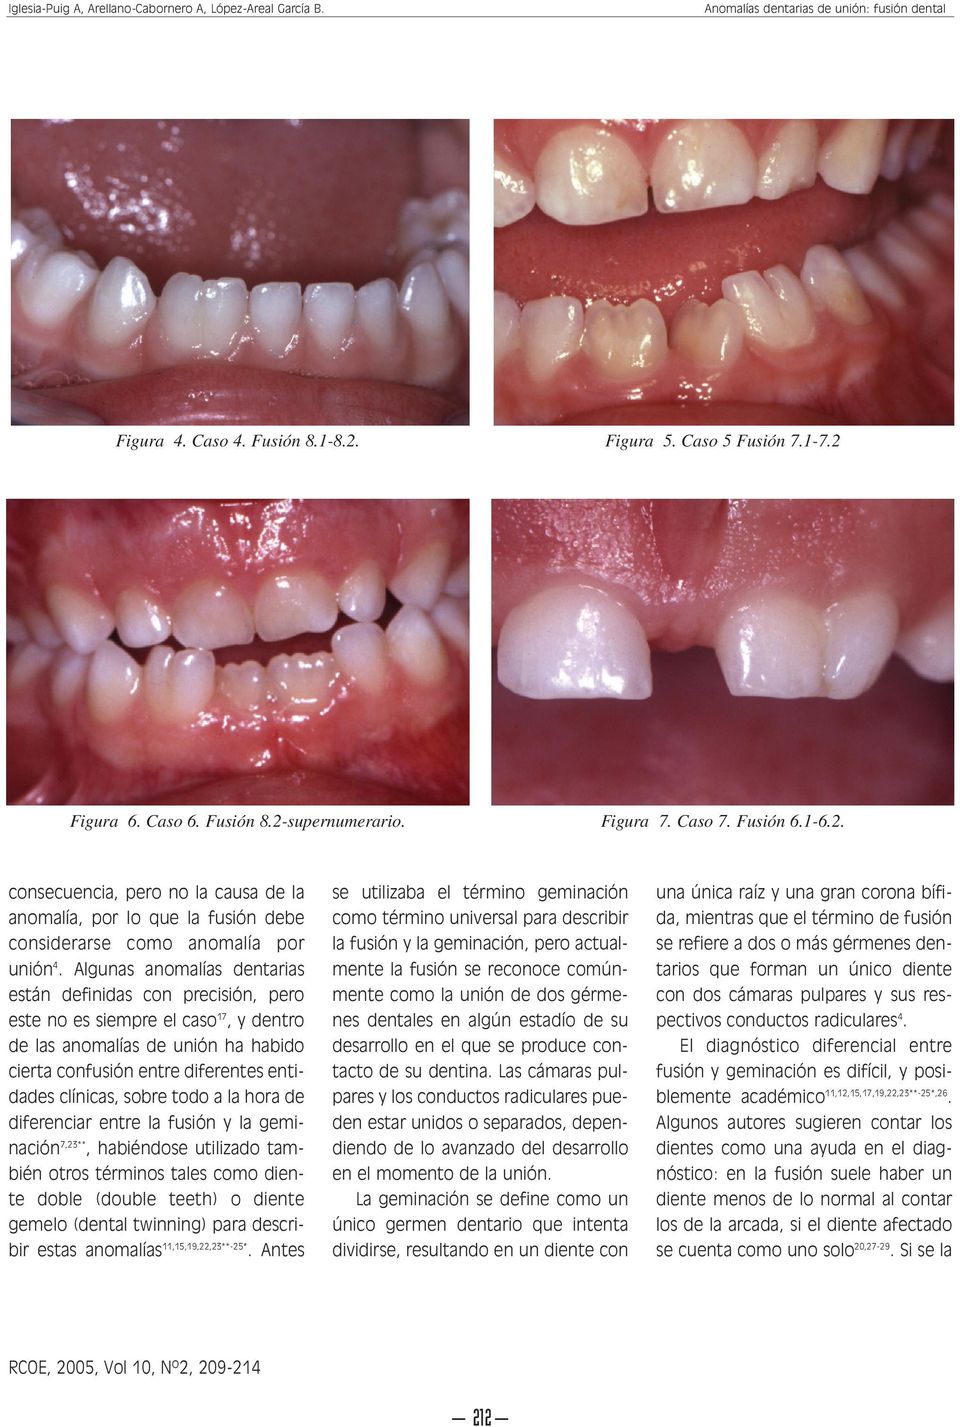 todo a la hora de diferenciar entre la fusión y la geminación 7,23**, habiéndose utilizado también otros términos tales como diente doble (double teeth) o diente gemelo (dental twinning) para